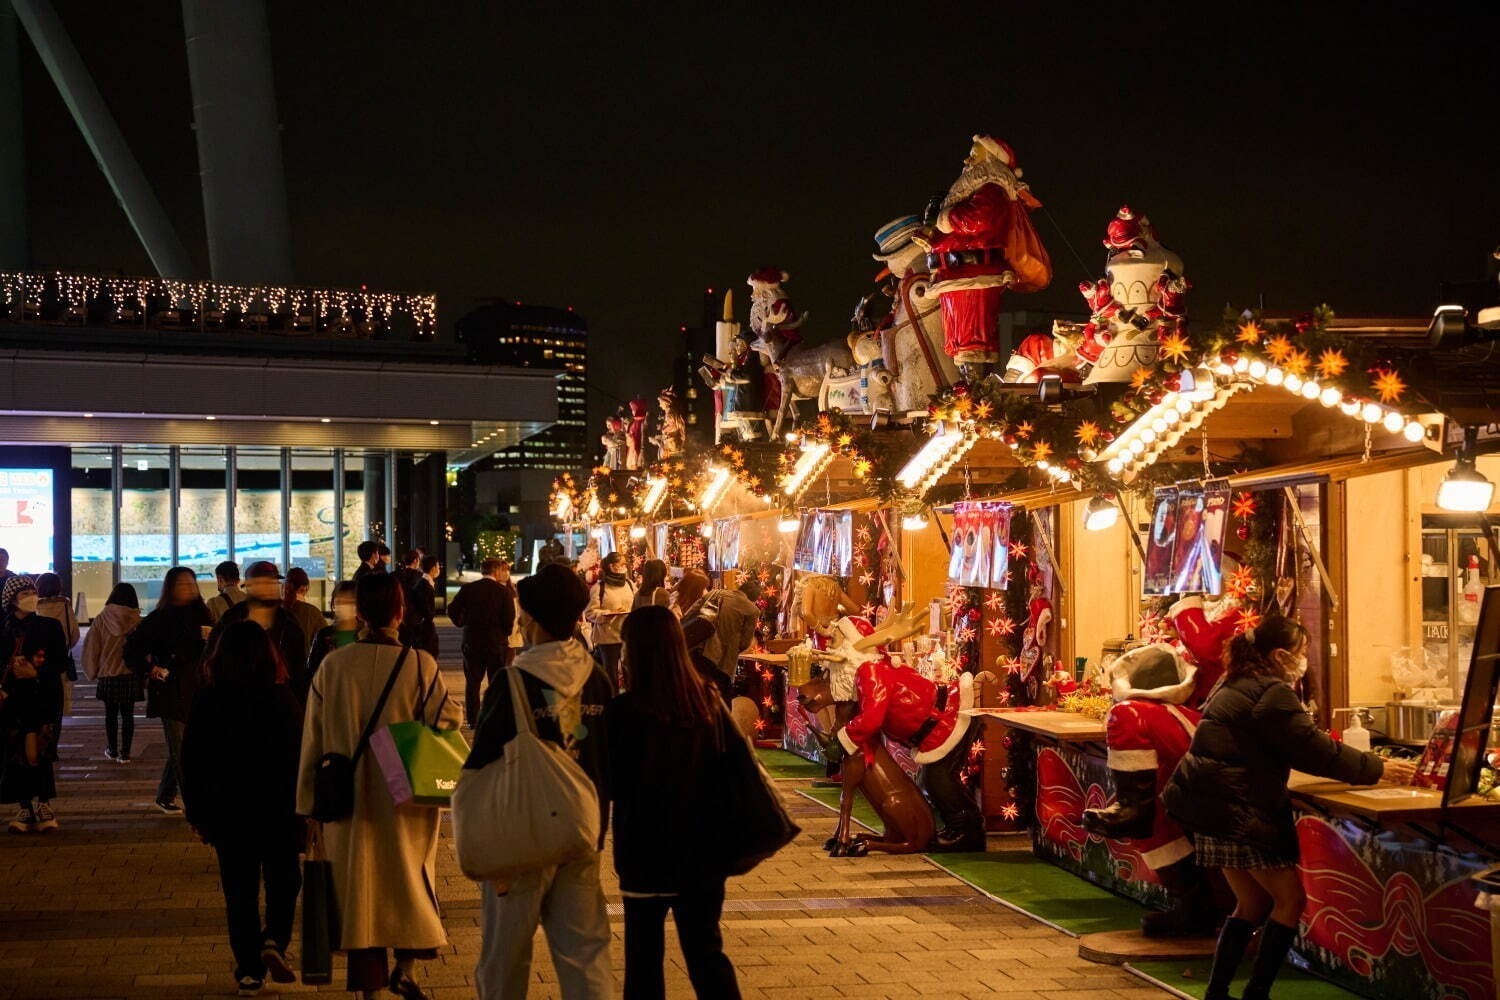 東京クリスマスマーケット2023  12/24 19:30〜